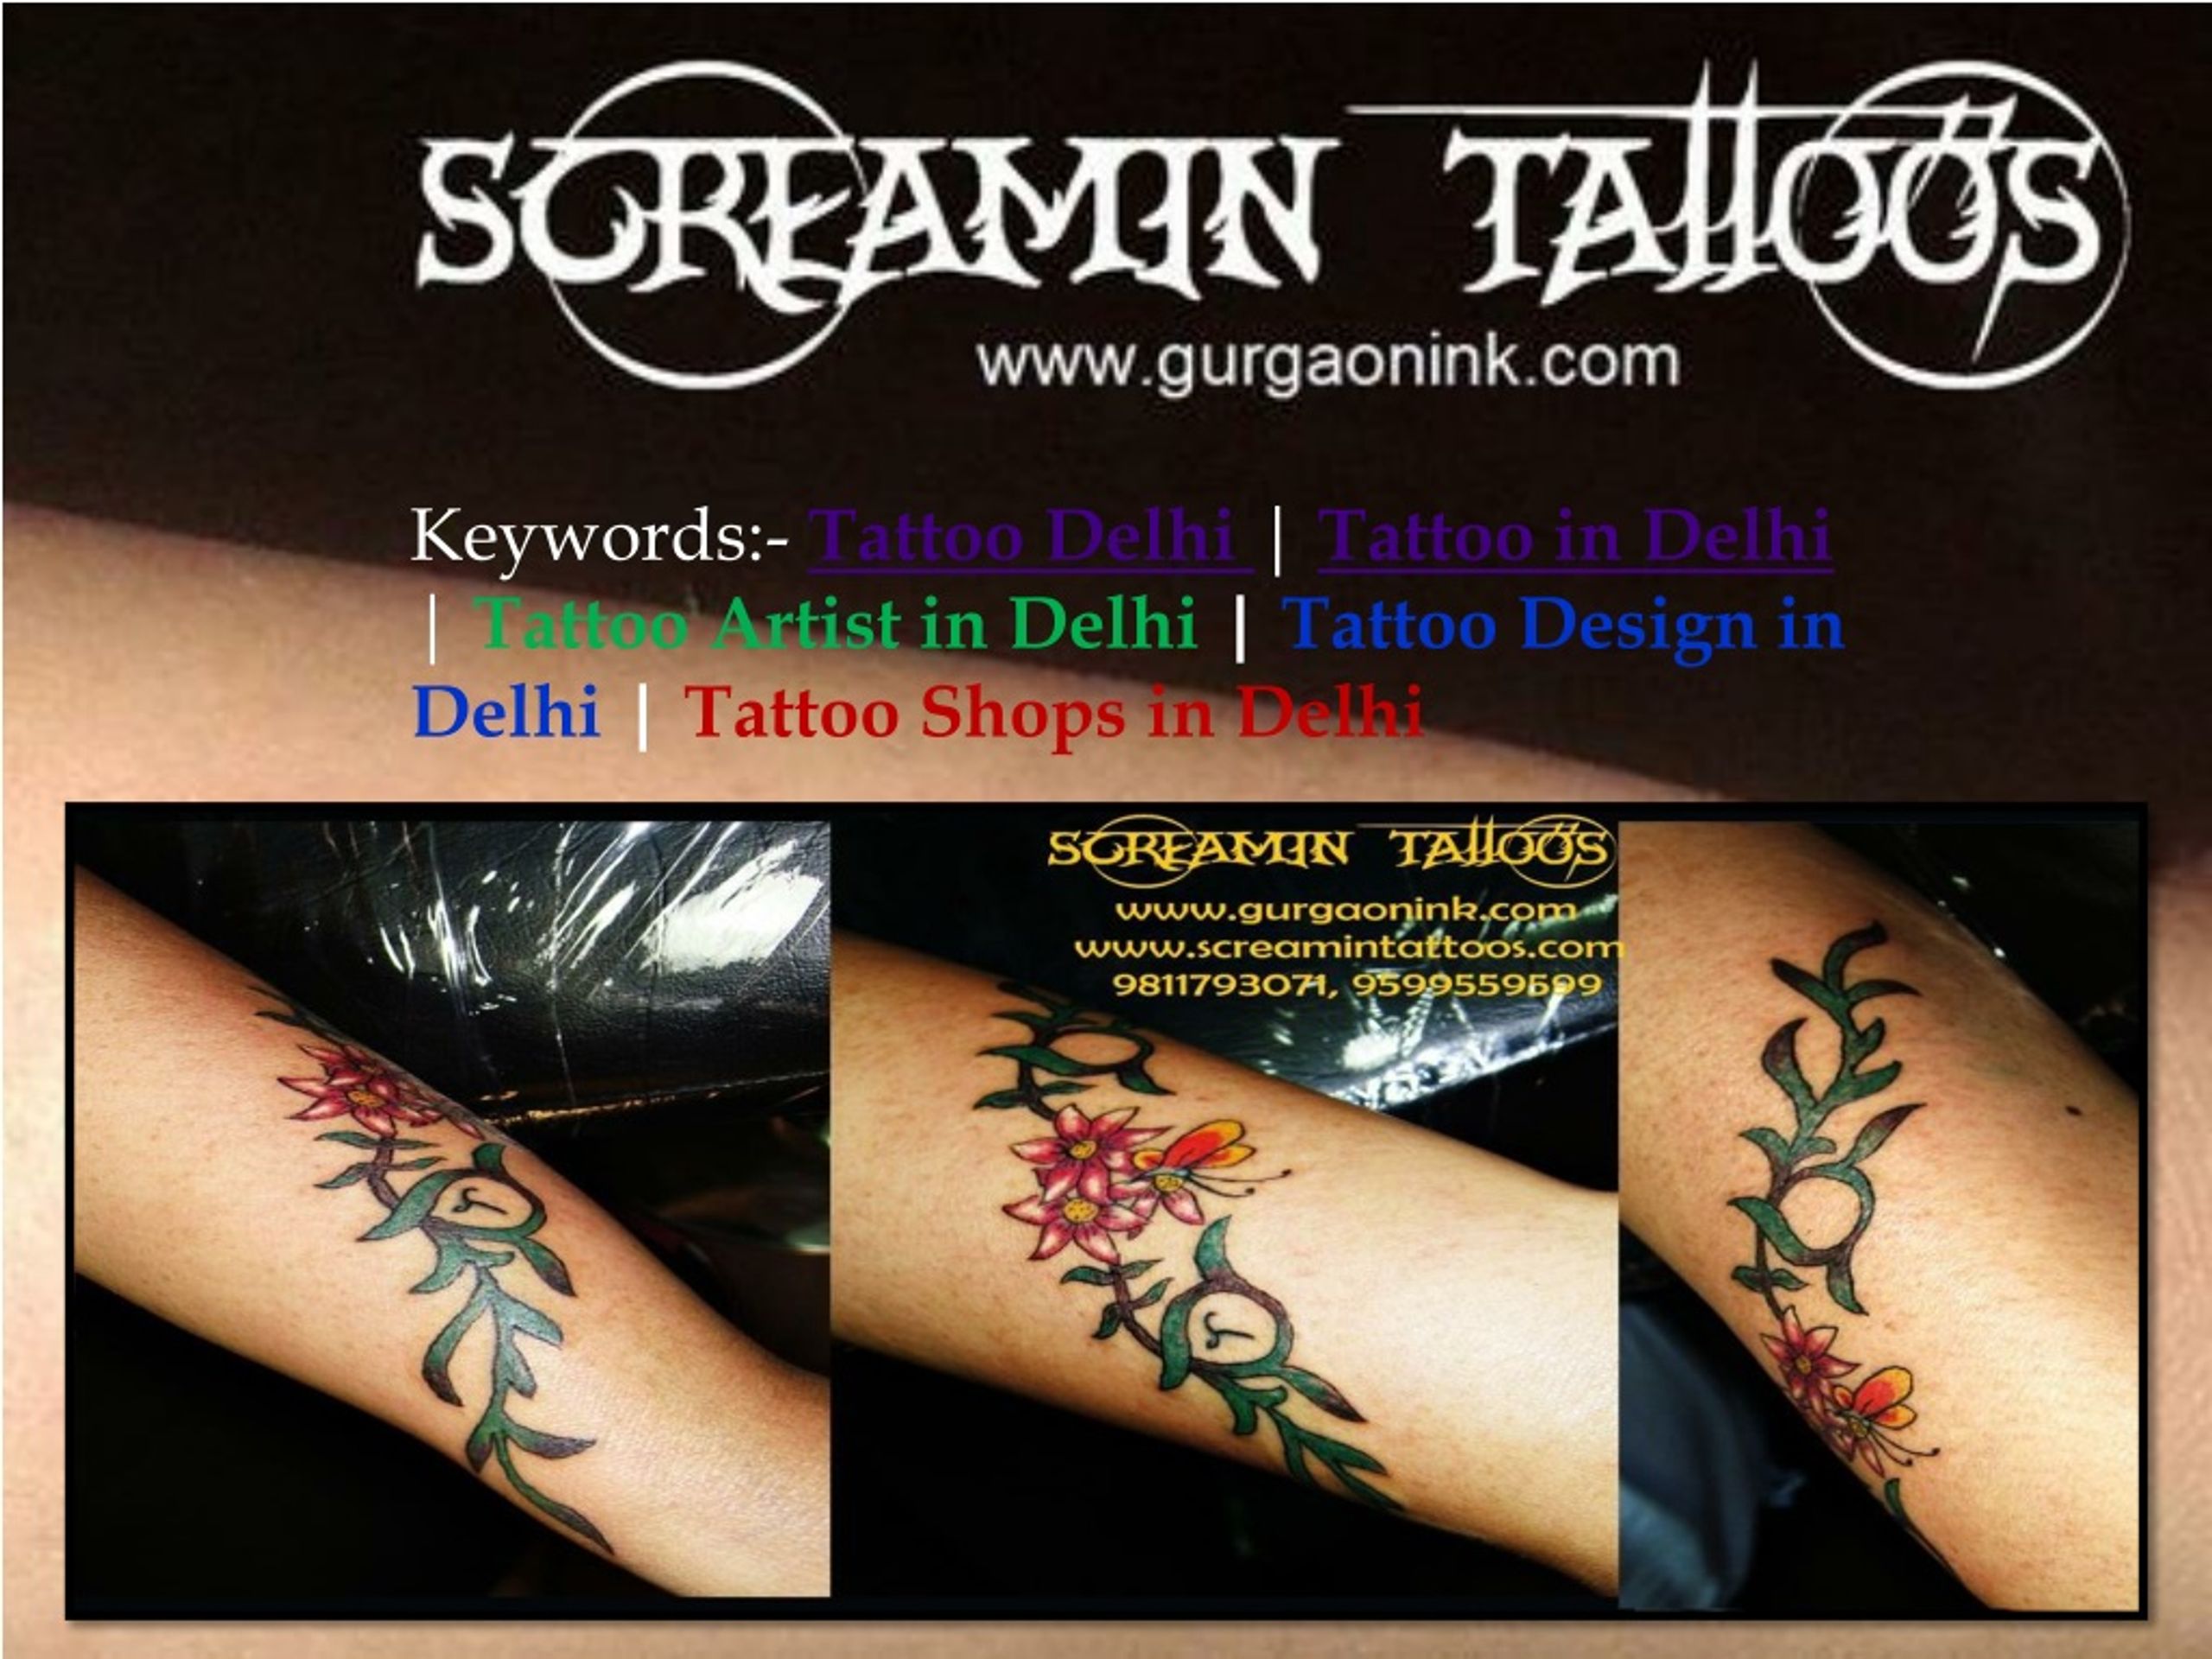 Shivay Tattoo Studio in Gurgaon Sector 50,Delhi - Best Tattoo Parlours in  Delhi - Justdial